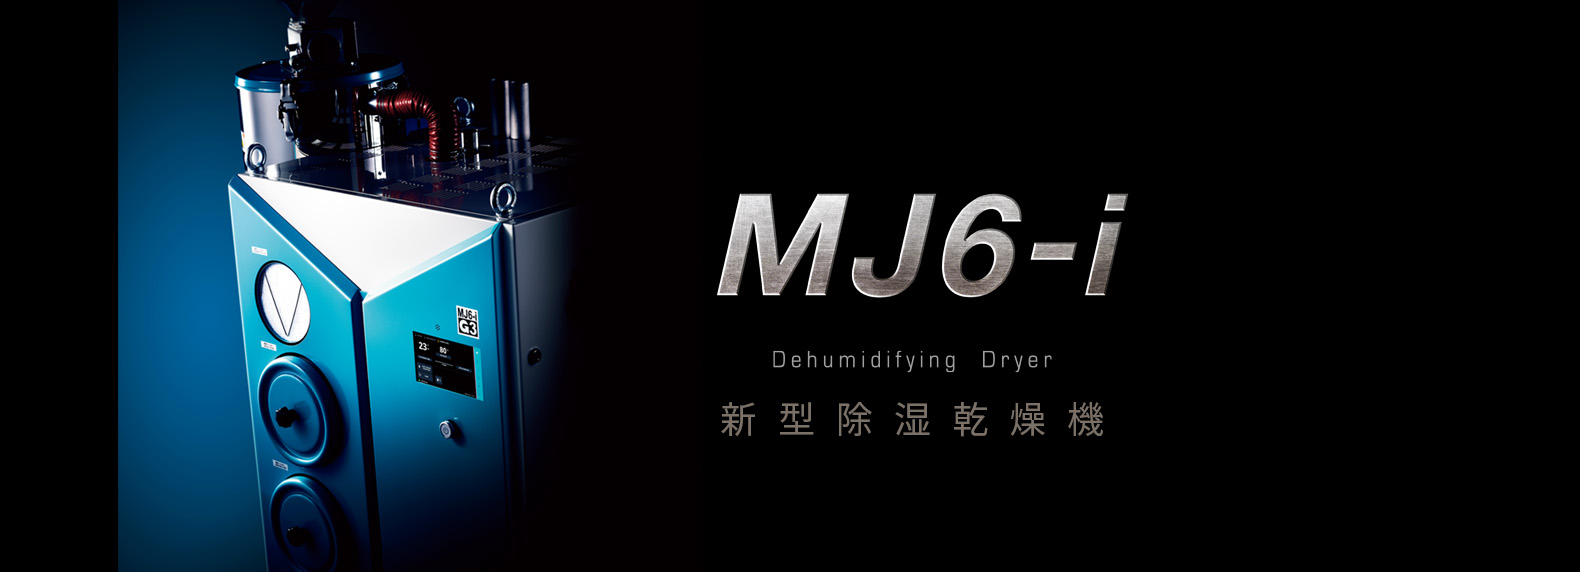 除湿热风干燥机“MJ6-i”主横幅